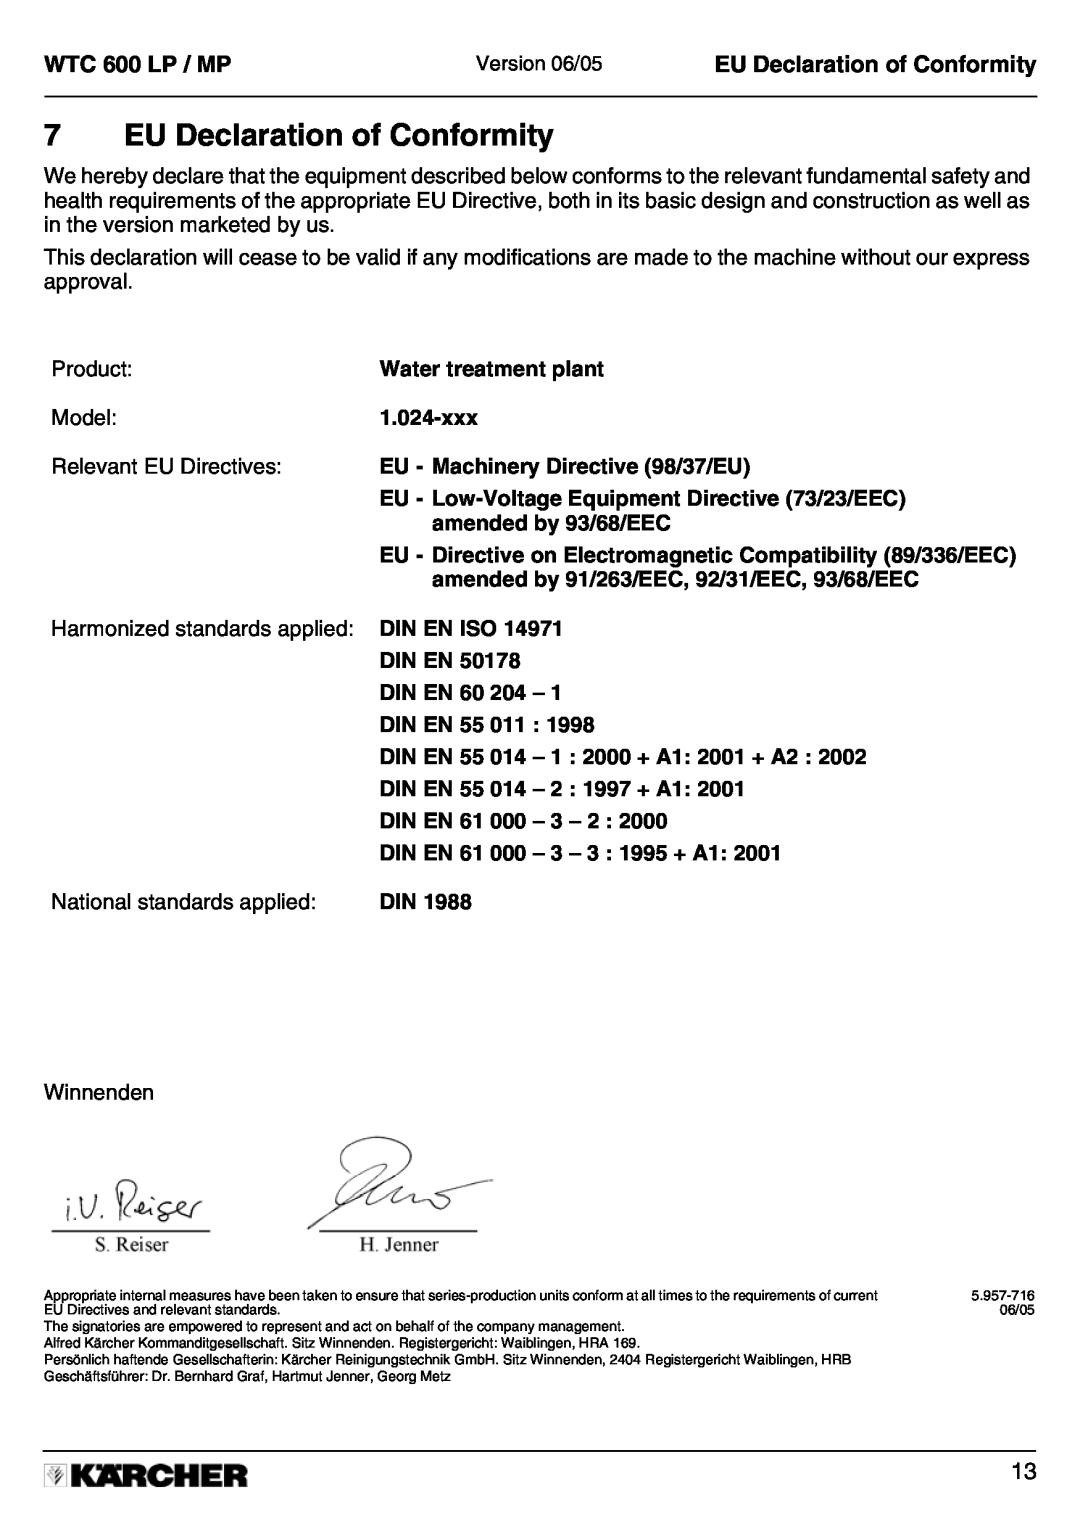 Karcher 600 MP manual EU Declaration of Conformity, WTC 600 LP / MP 